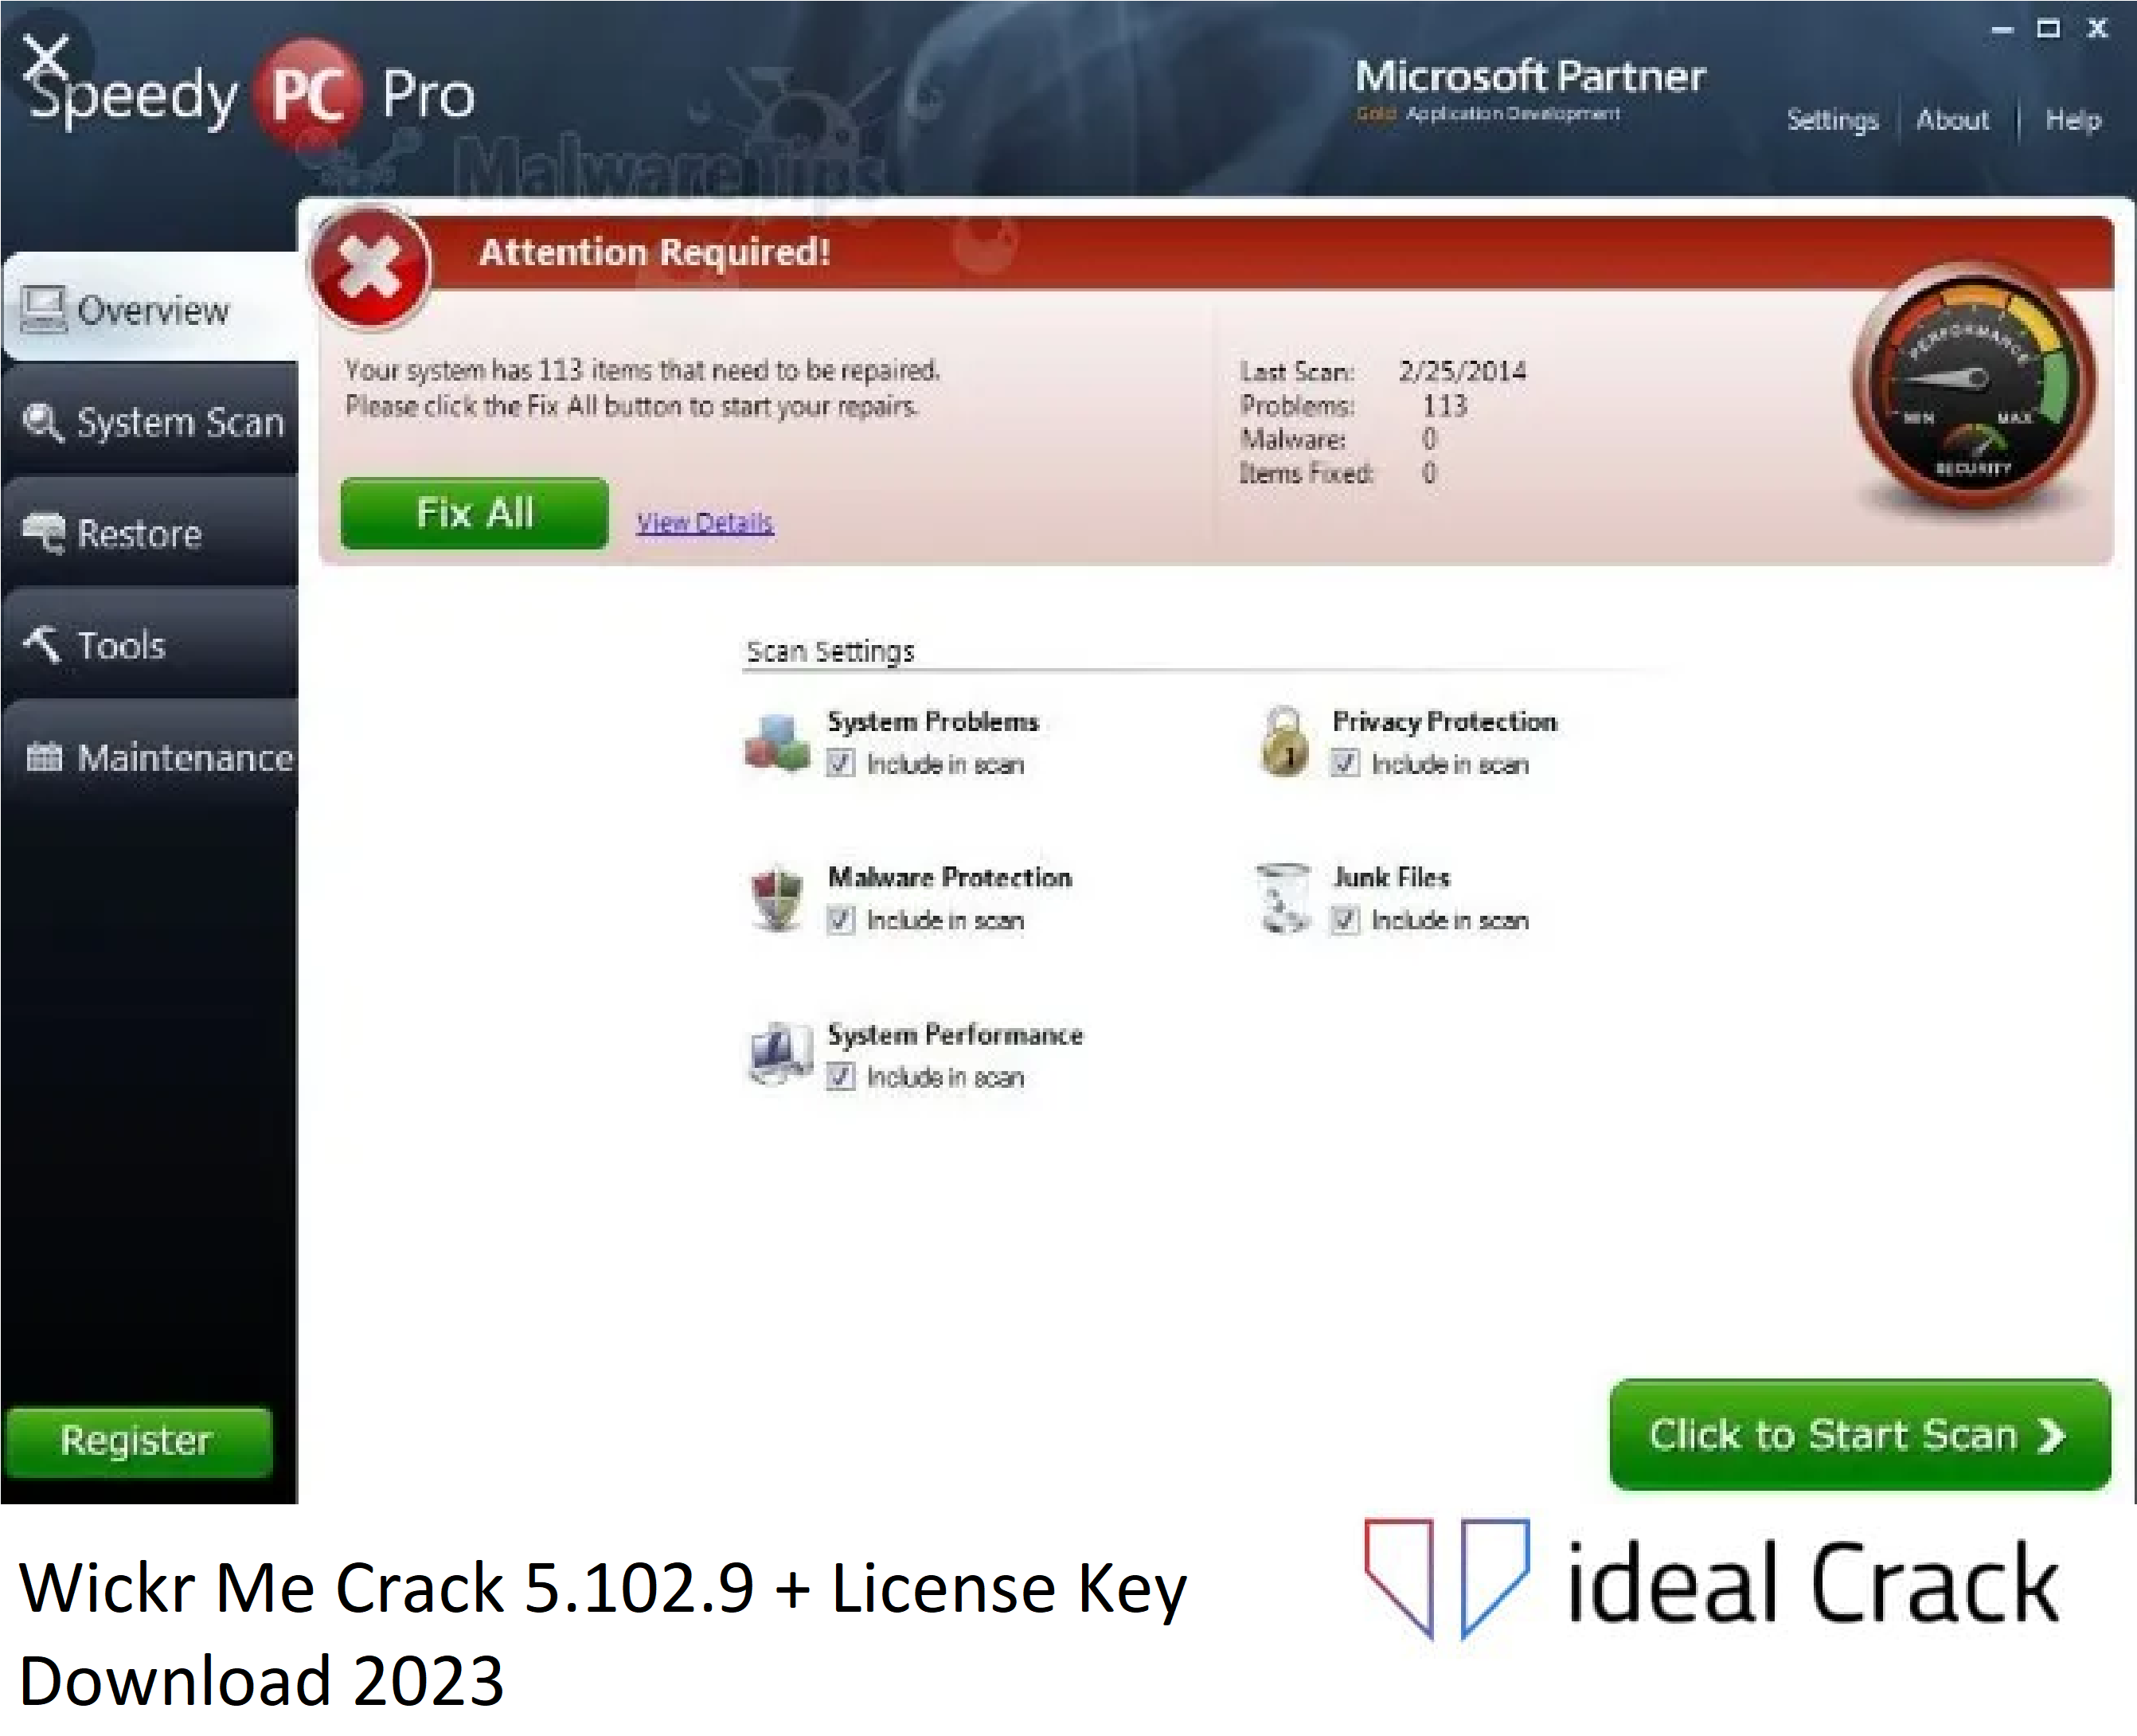 Wickr Me Crack 5.102.9 + License Key Download 2023